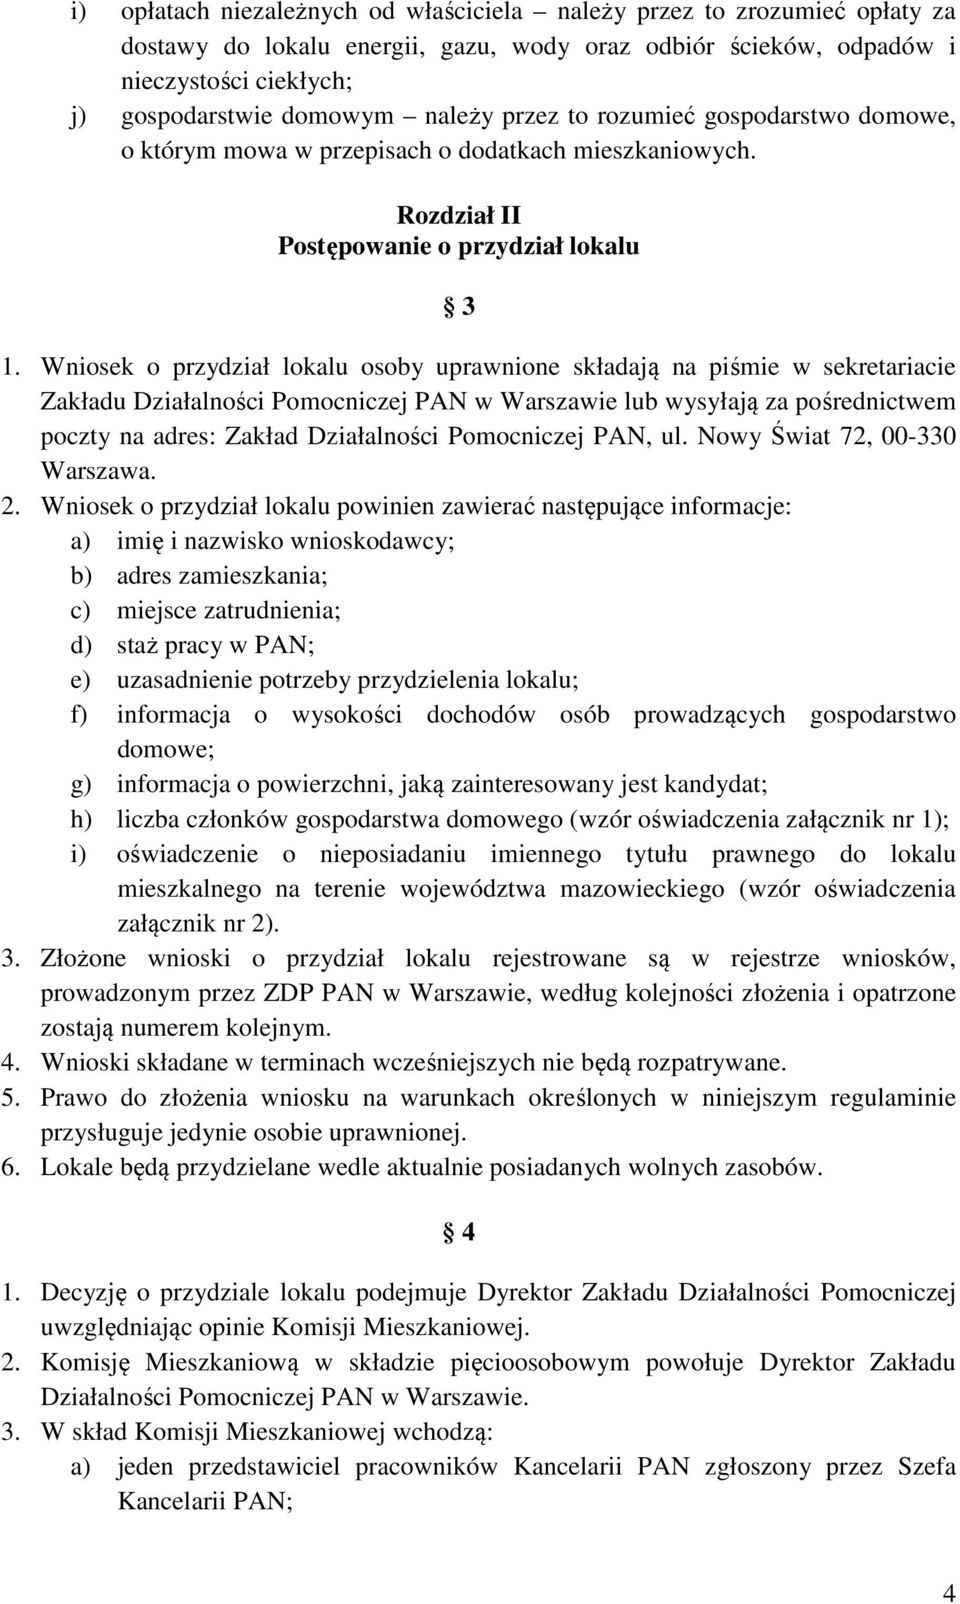 Wniosek o przydział lokalu osoby uprawnione składają na piśmie w sekretariacie Zakładu Działalności Pomocniczej PAN w Warszawie lub wysyłają za pośrednictwem poczty na adres: Zakład Działalności